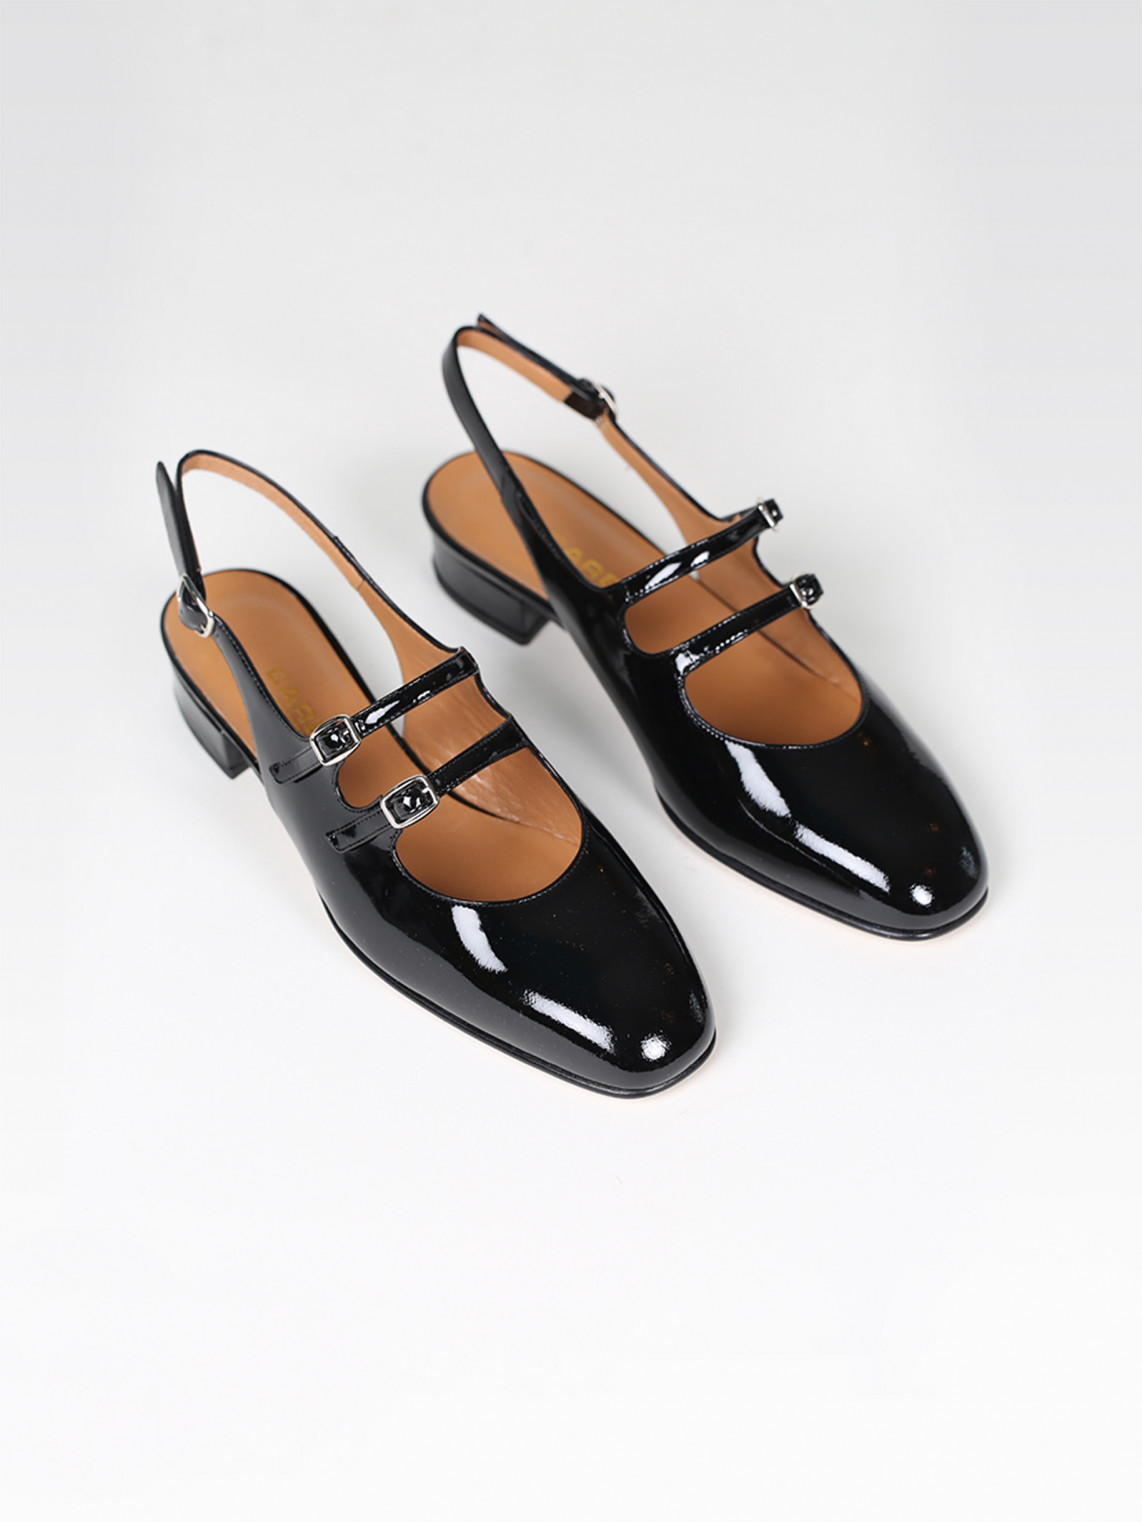 PECHE black patent leather slingback Mary Janes | Carel Paris Shoes